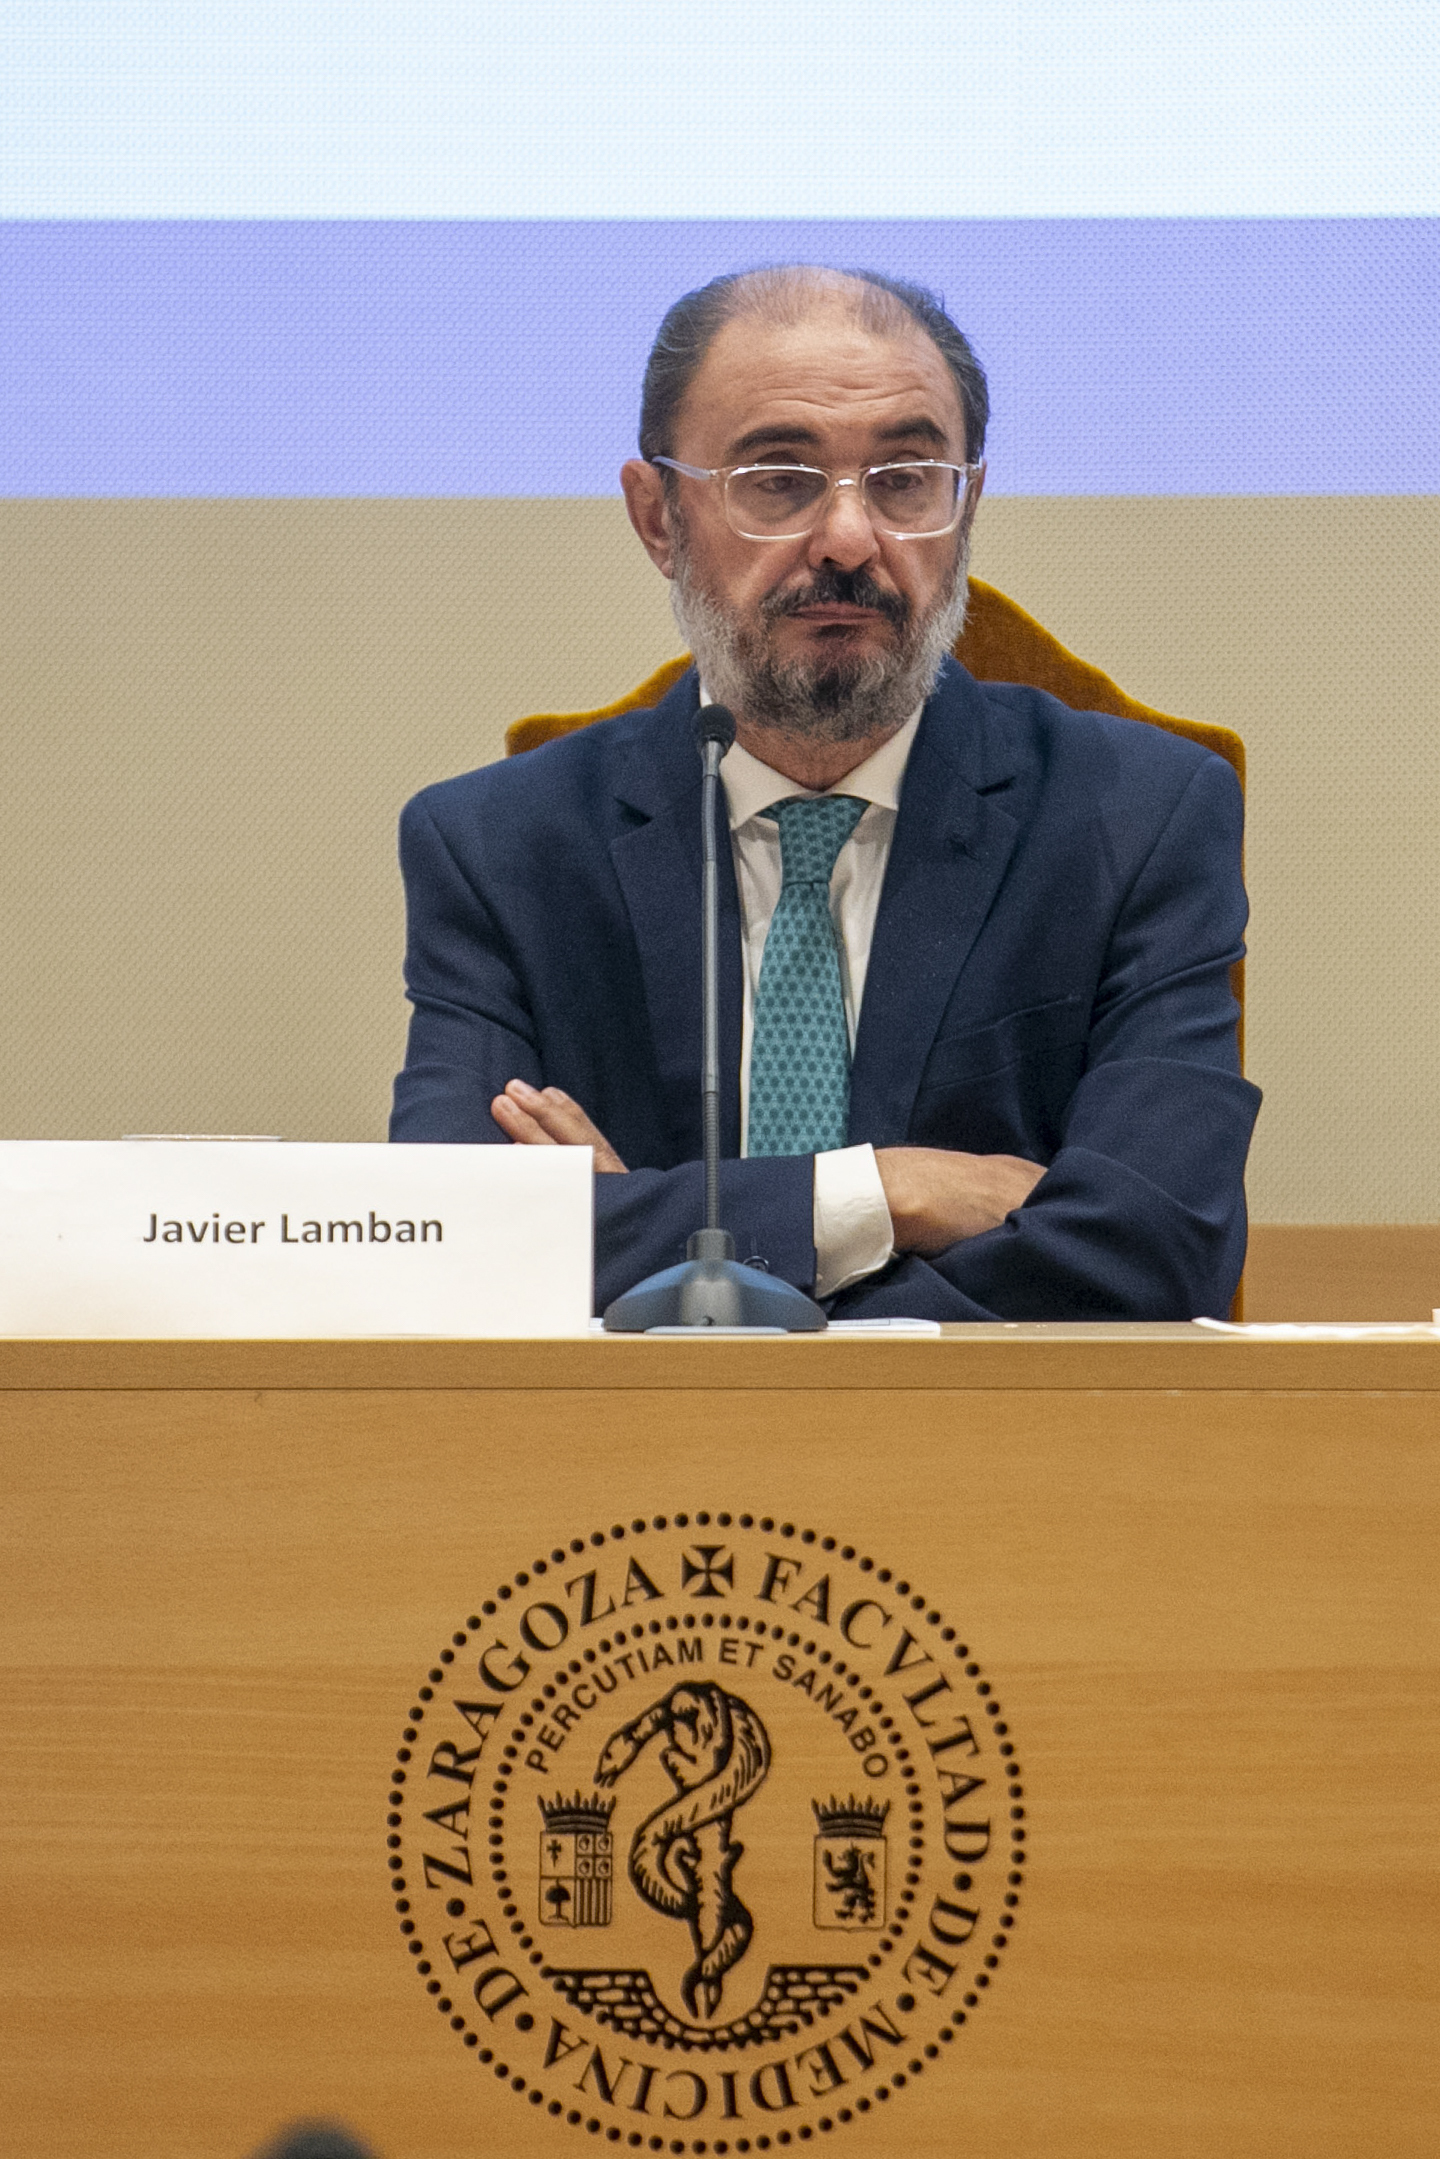 El presidente de Aragn, Javier Lambn, inaugura la "Conferencia de cncer colorrectal" en la Facultad de Medicina de la Universidad de Zaragoza hace una semana.